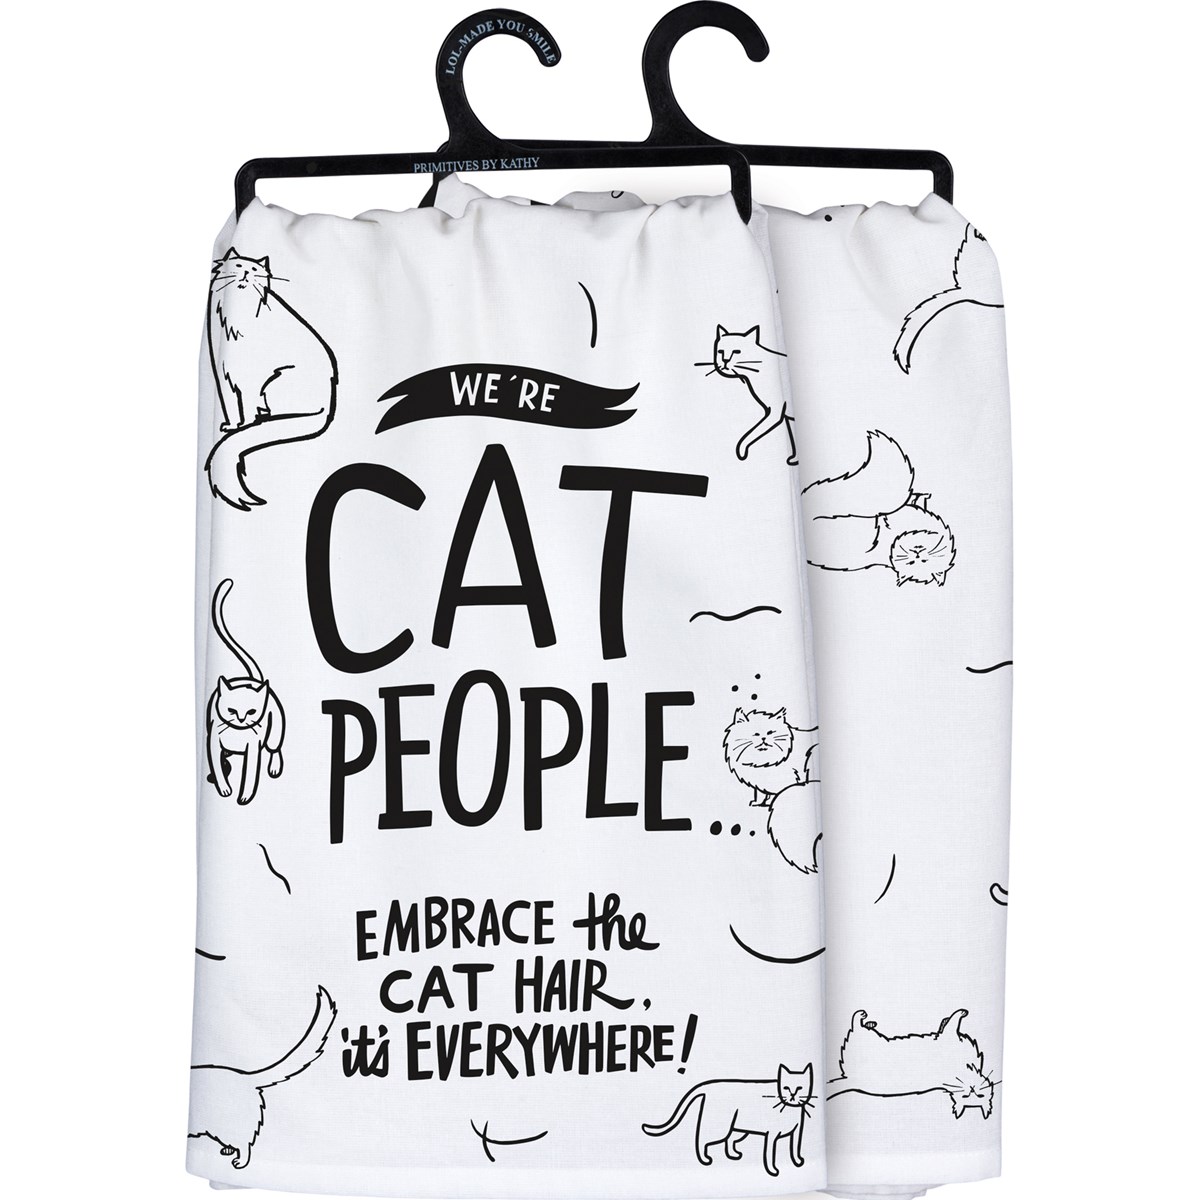 Embrace The Cat Hair Kitchen Towel - Cotton